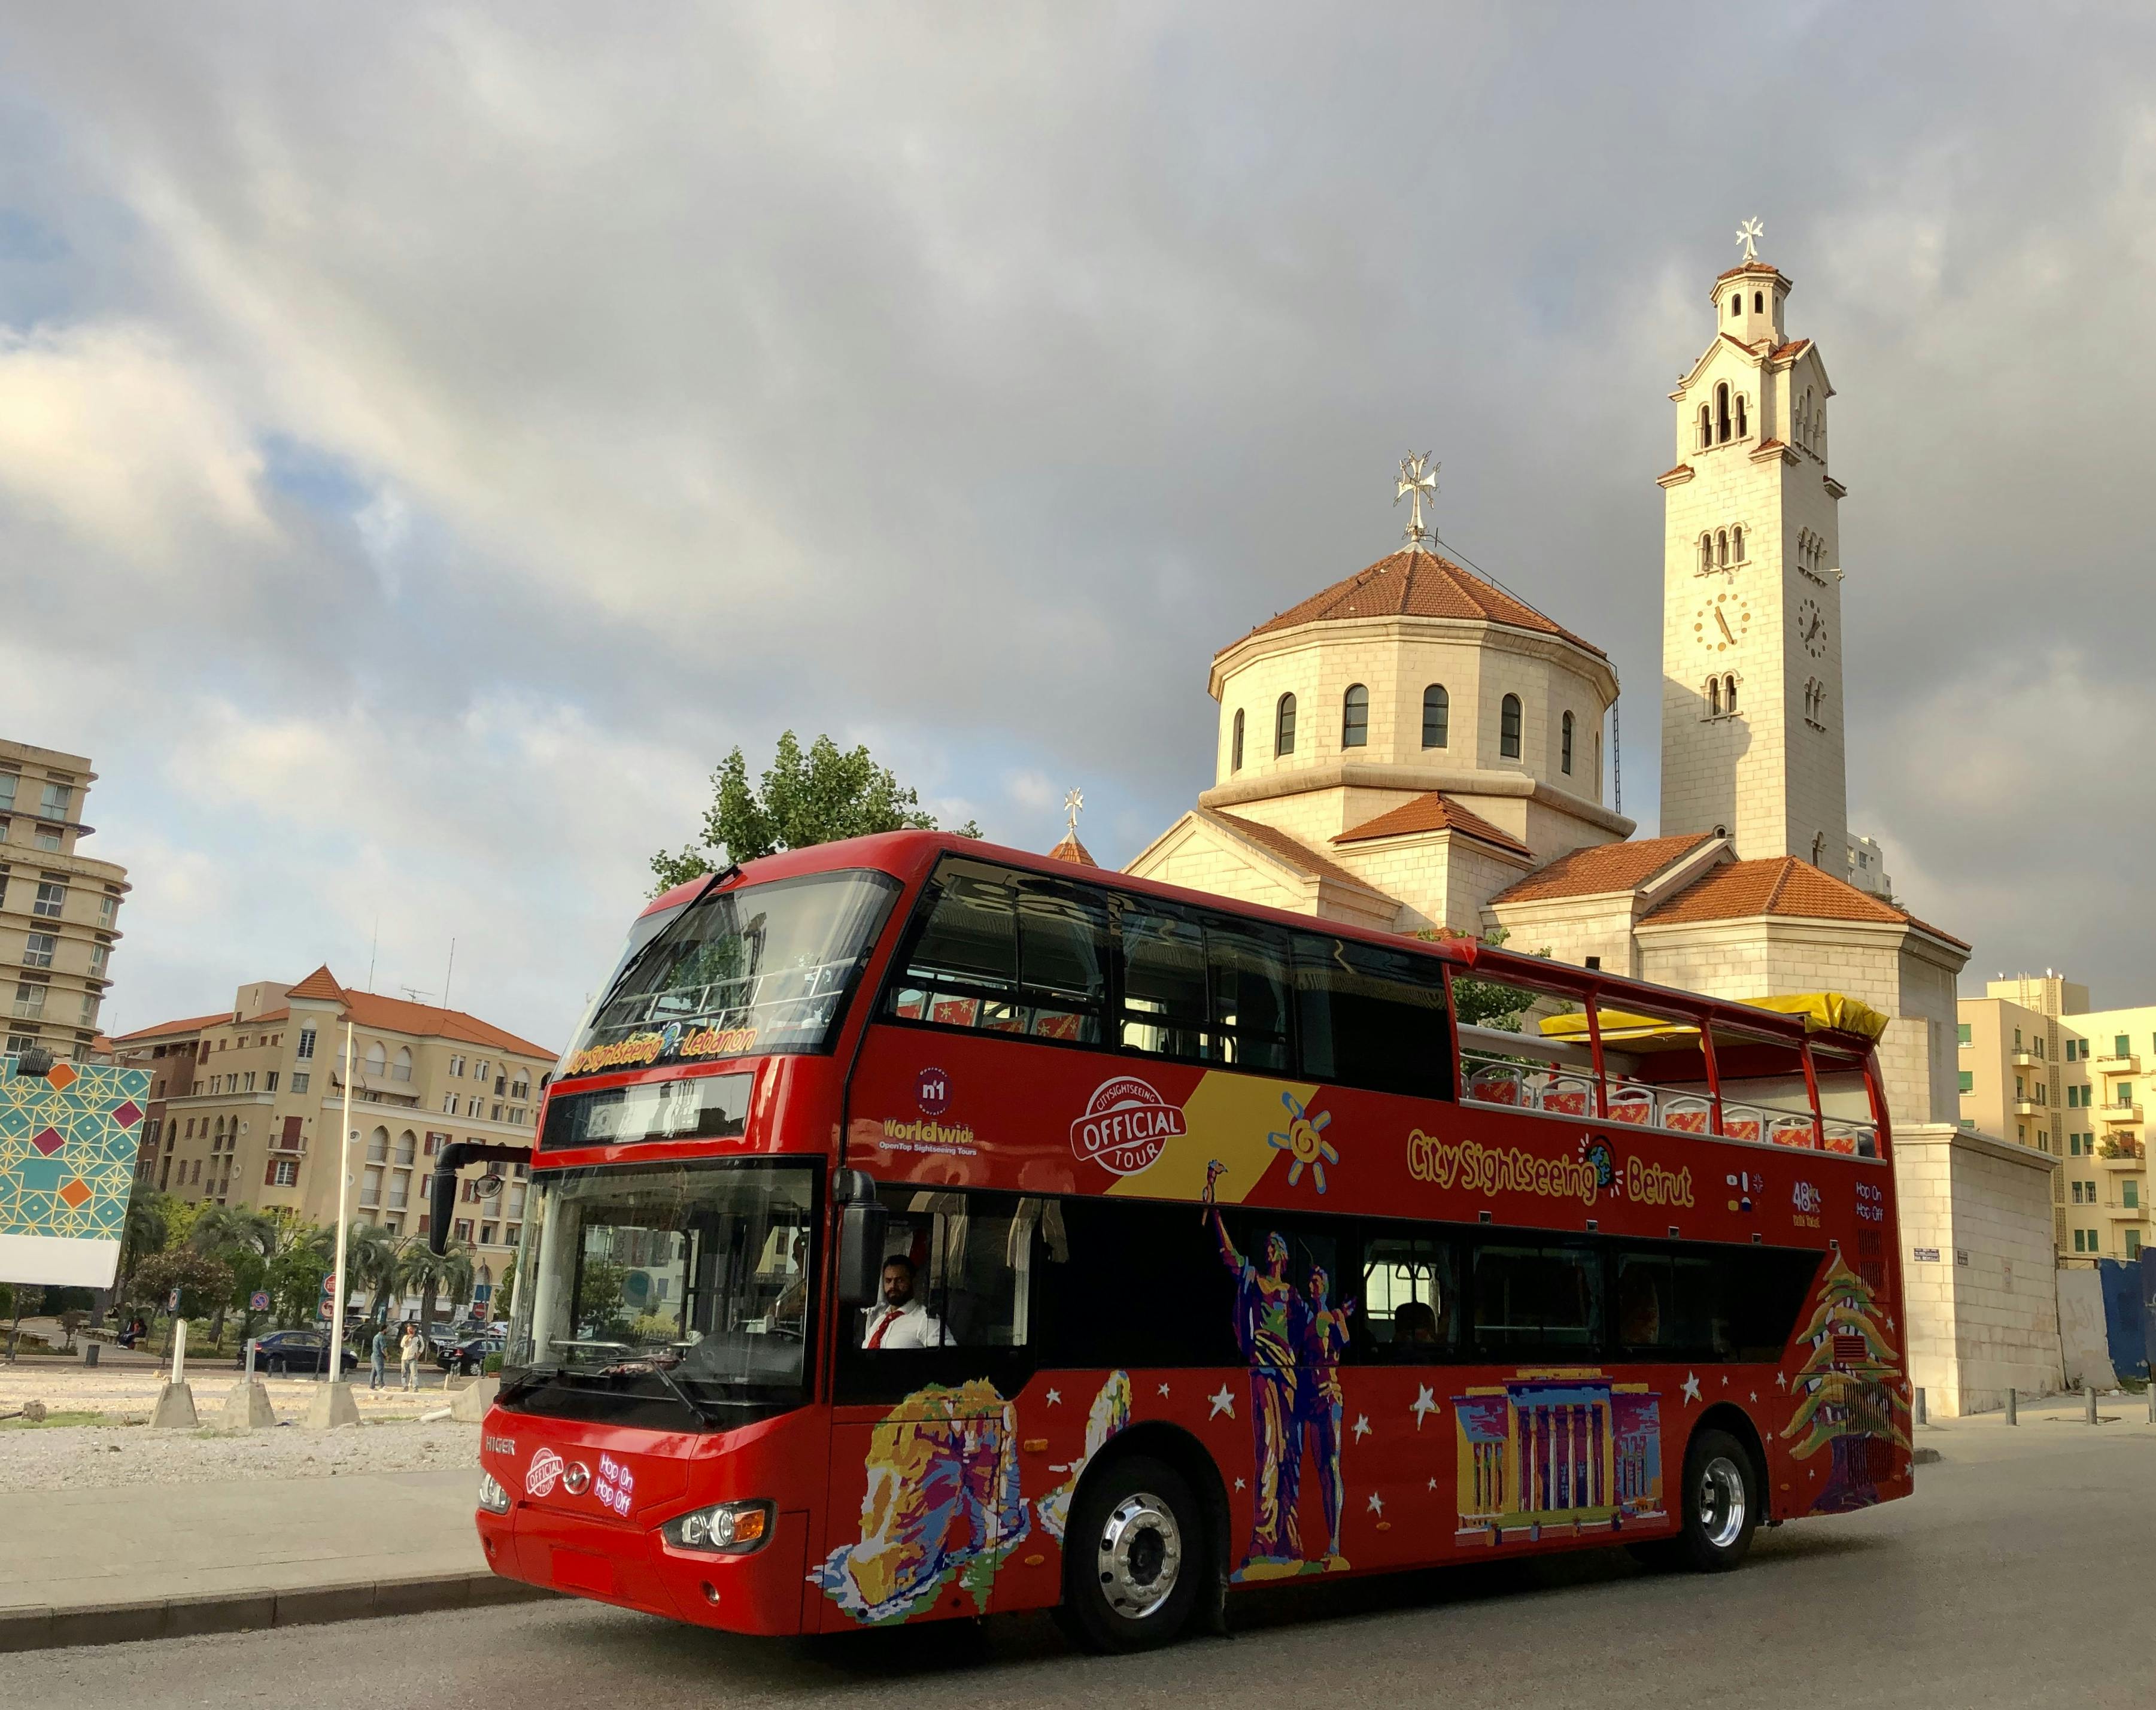 Stadtrundfahrt mit dem Hop-on-Hop-off-Bus durch Beirut